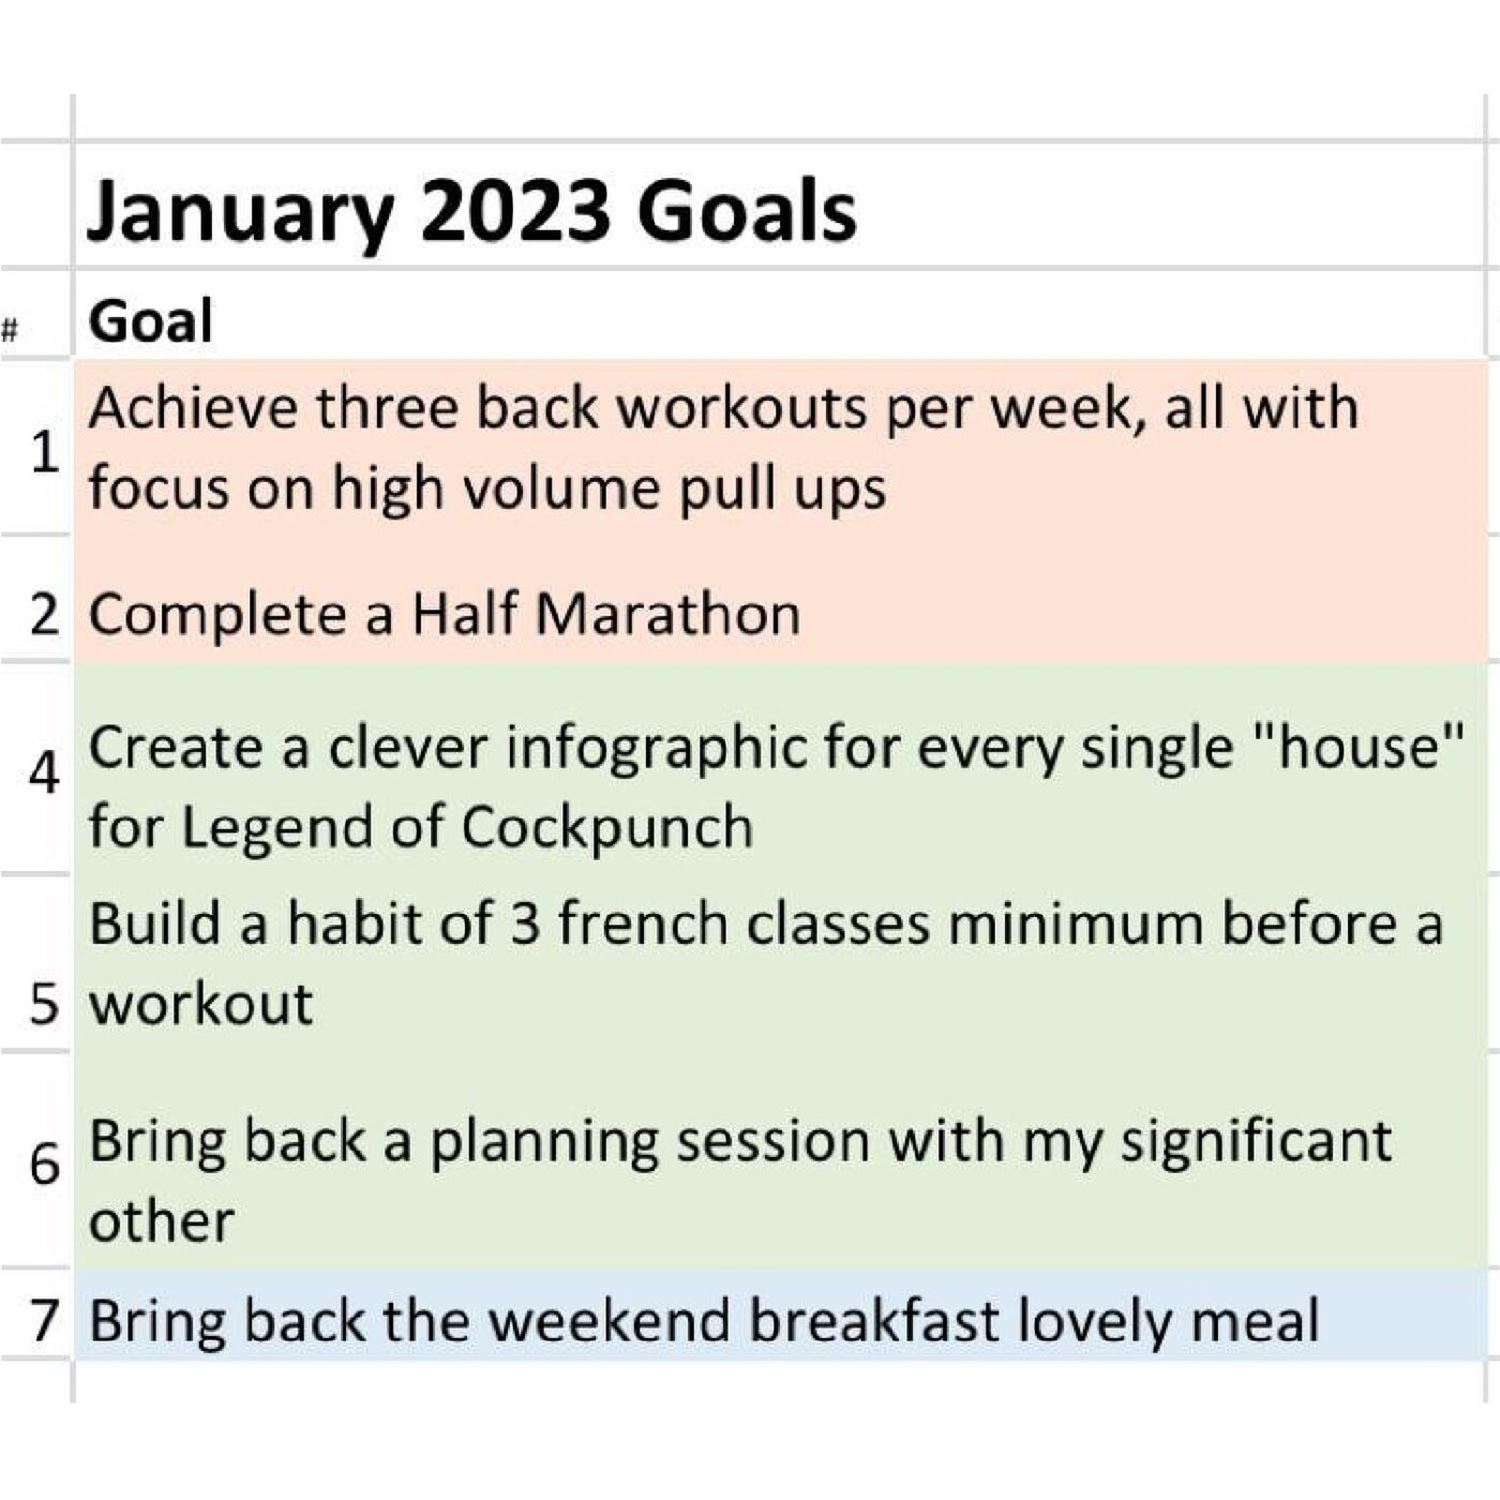 Juan's January Goals